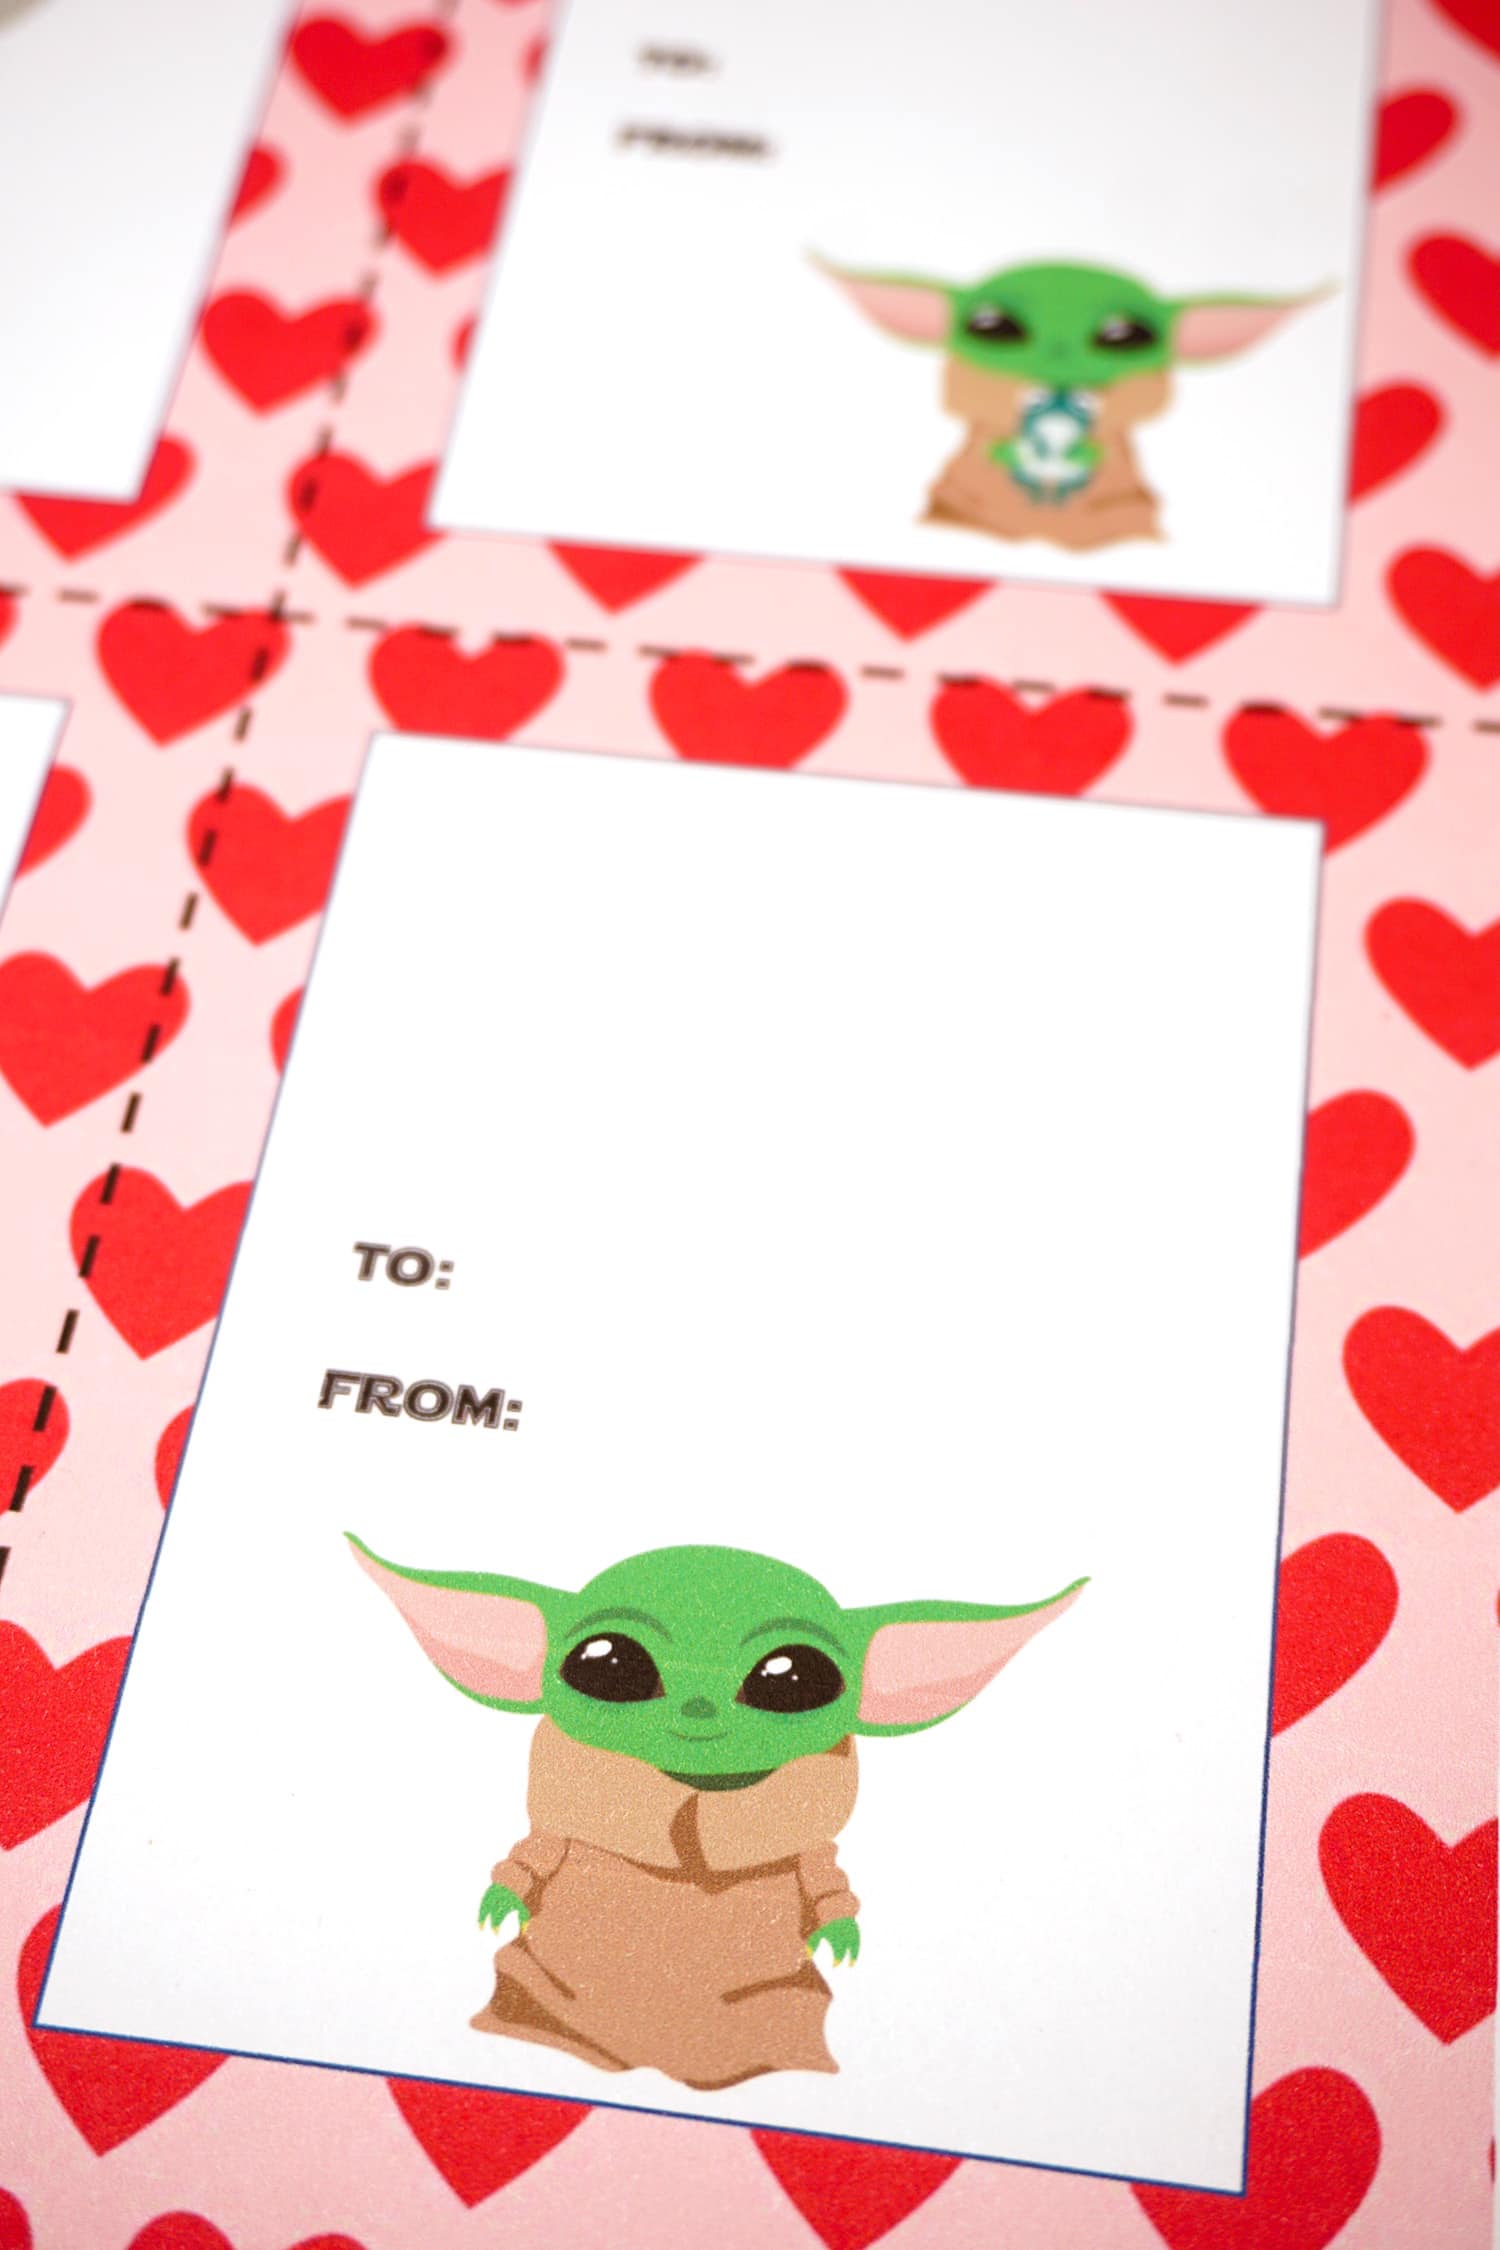 Baby Yoda Valentines